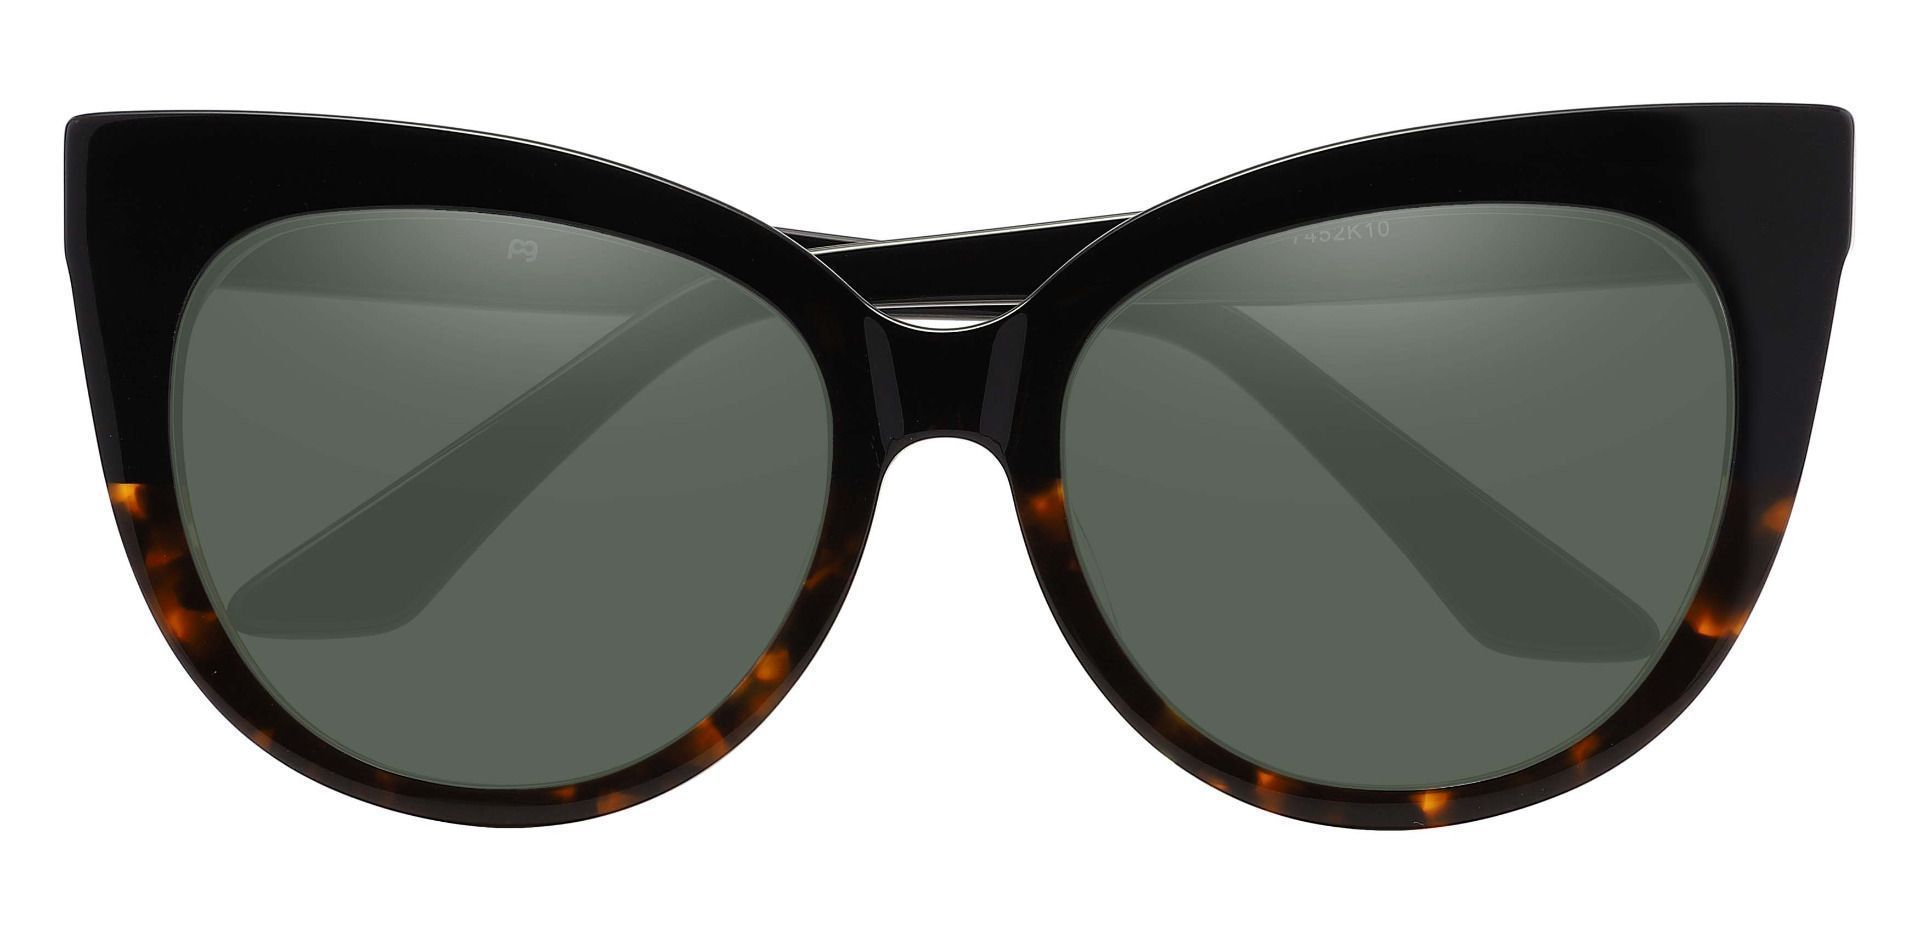 Sedalia Cat Eye Progressive Sunglasses - Black Frame With Green Lenses